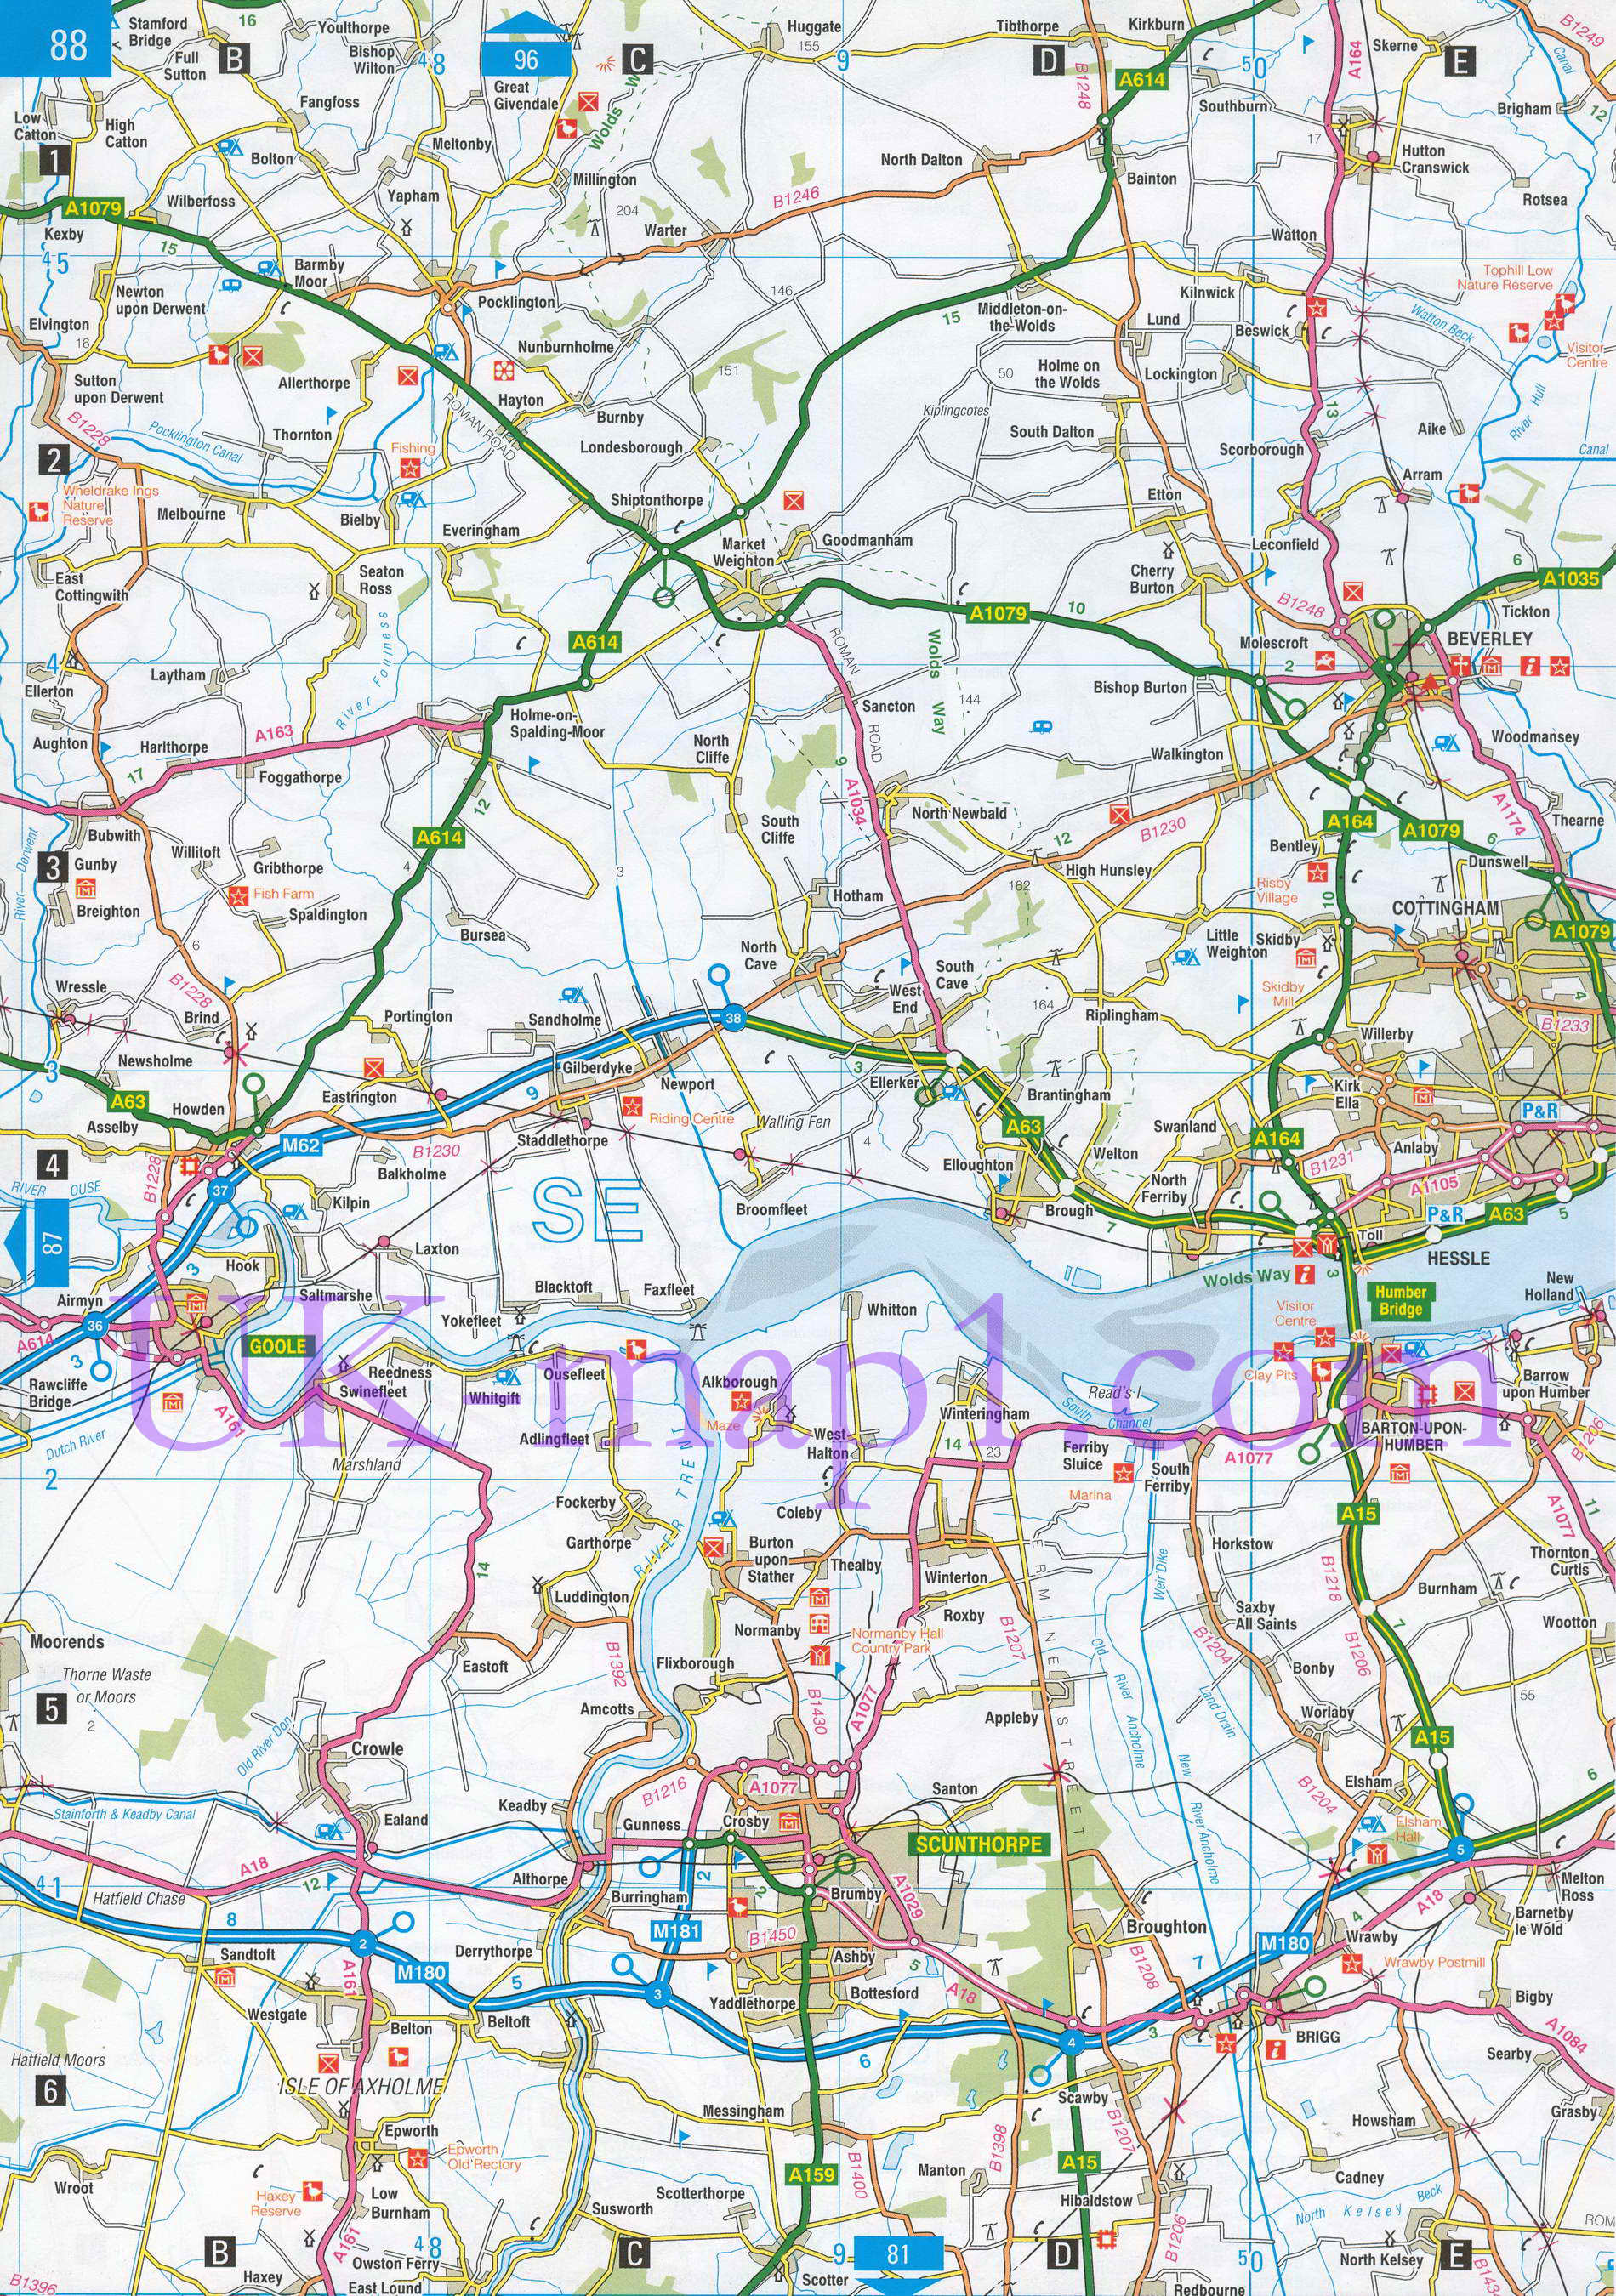 Карта Восточного Райдинга Йоркшира. Подробная карта - Восточный Райдинг Йоркшира (Англия), A0 - 